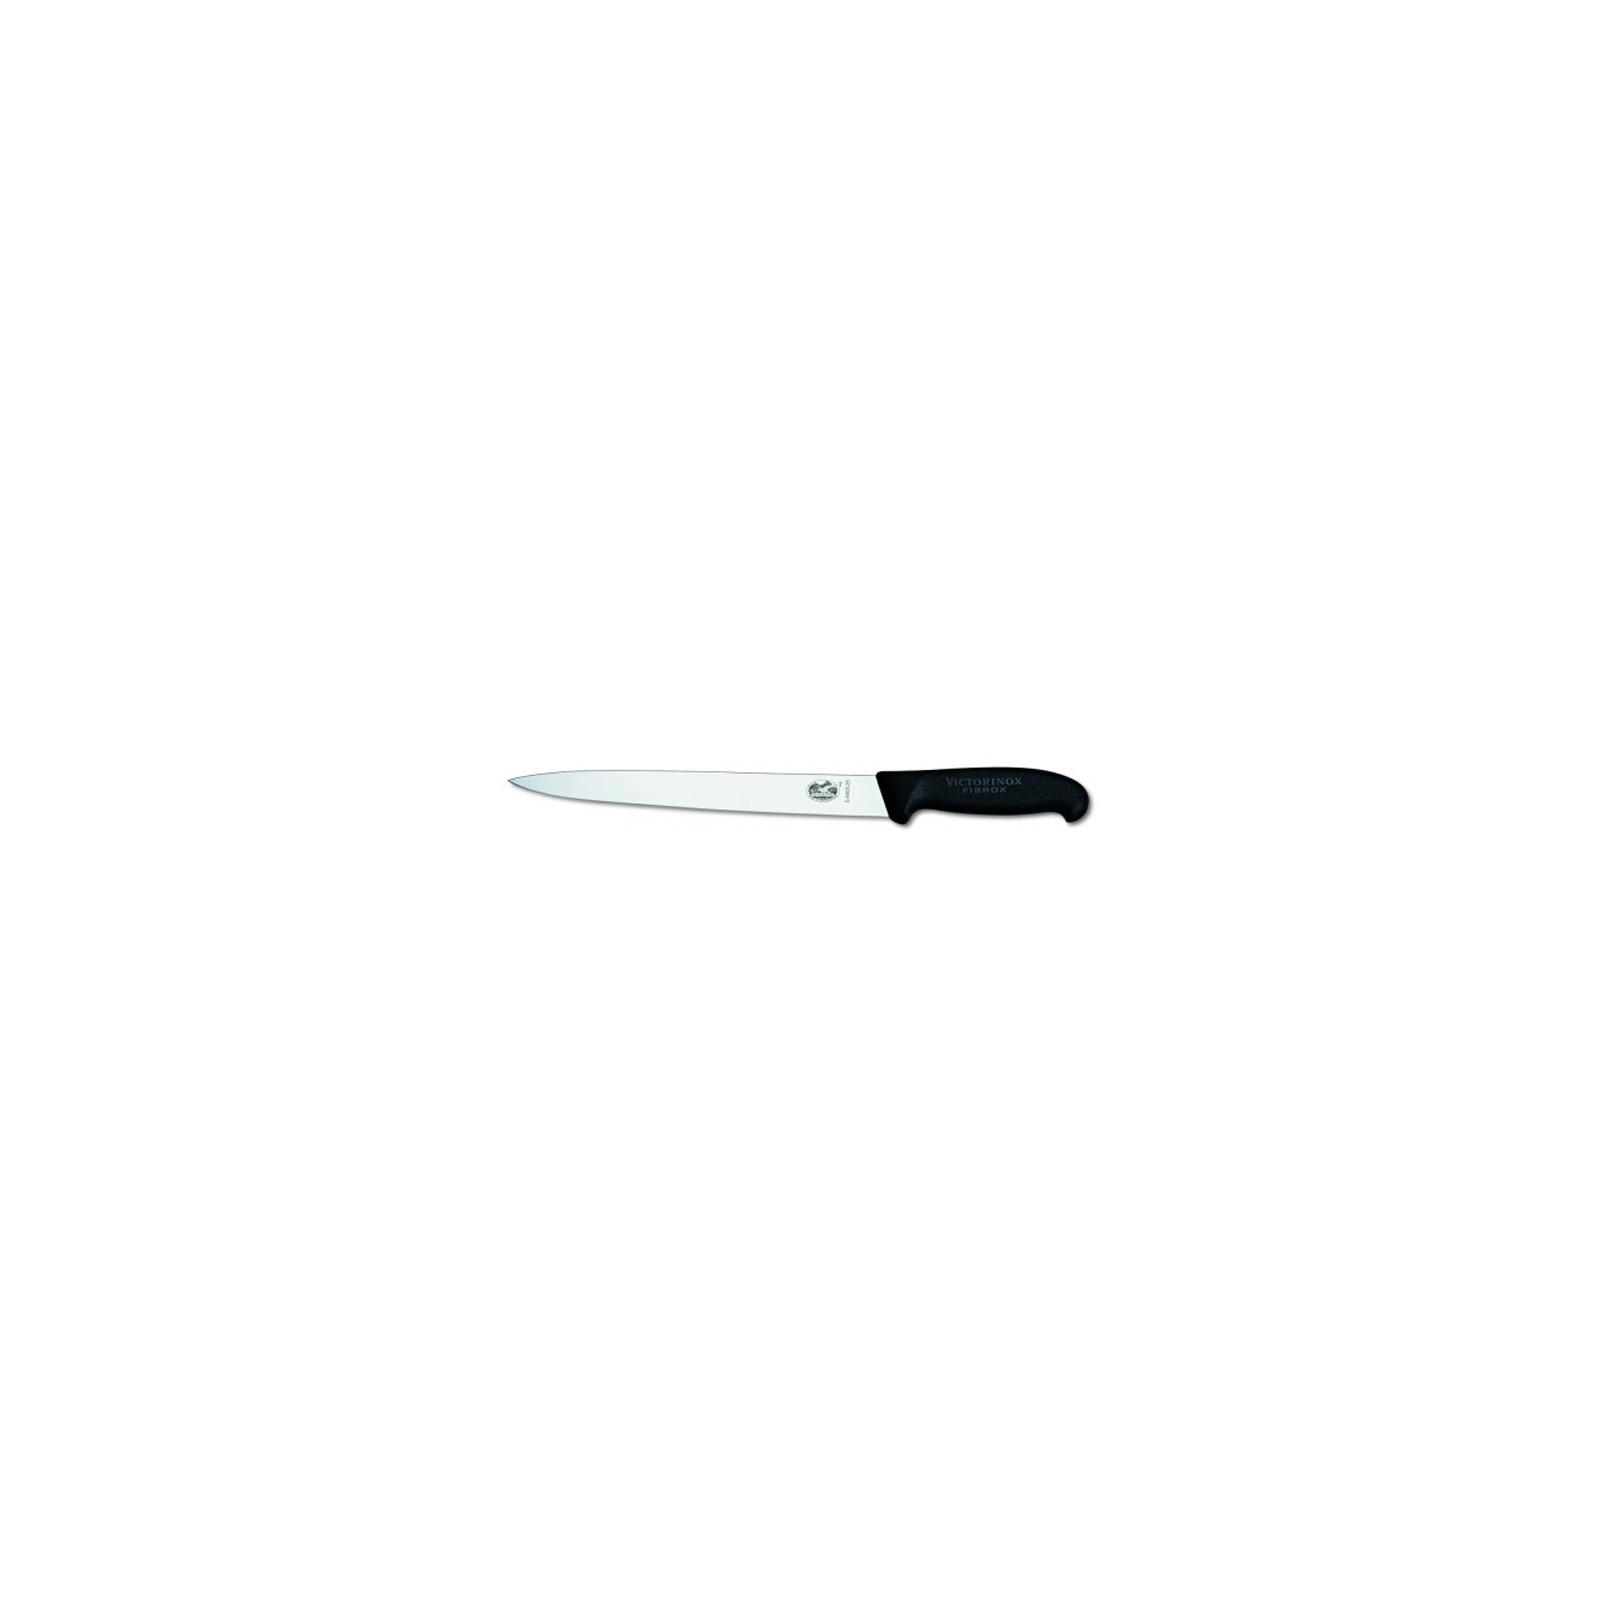 Кухонный нож Victorinox Fibrox для нарезки 25 см, черный (5.4403.25)